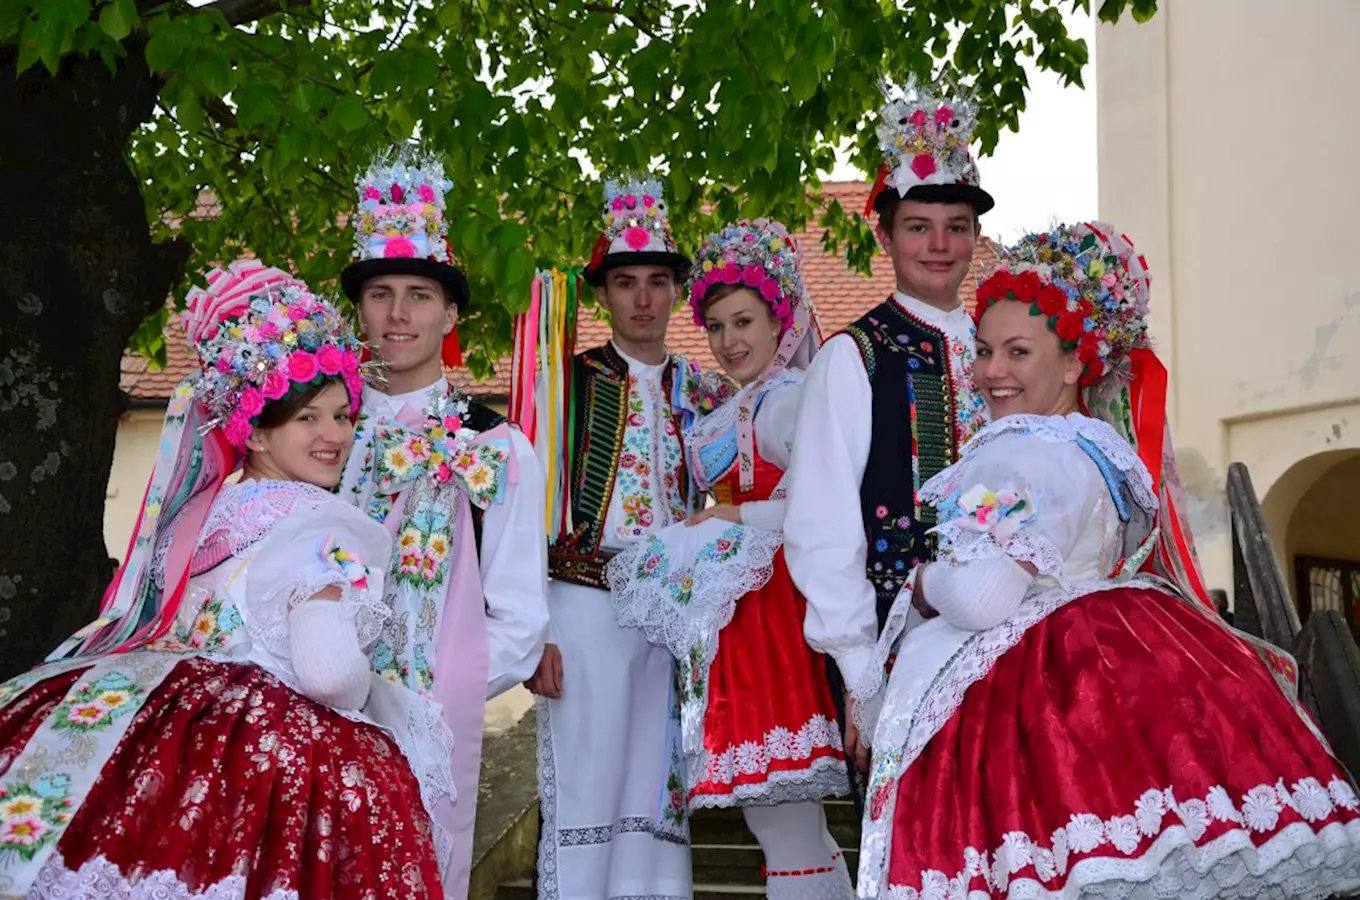 Chasa z Kobylí zve o víkendu na tradiční krojované hody